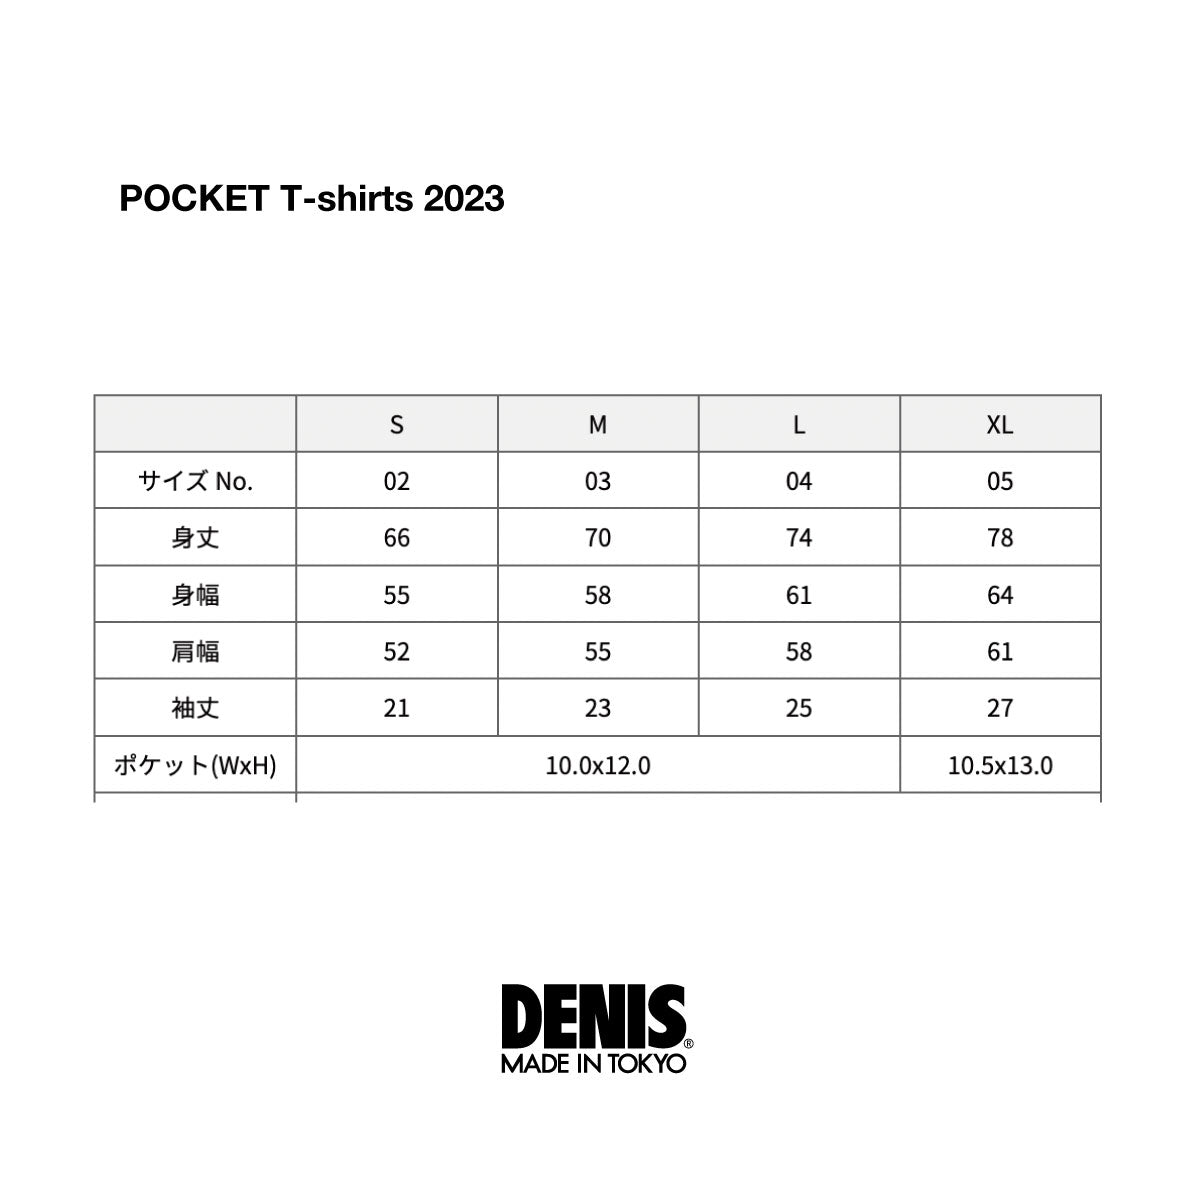 Pocket T-shirt DENIS POCKETT 2023